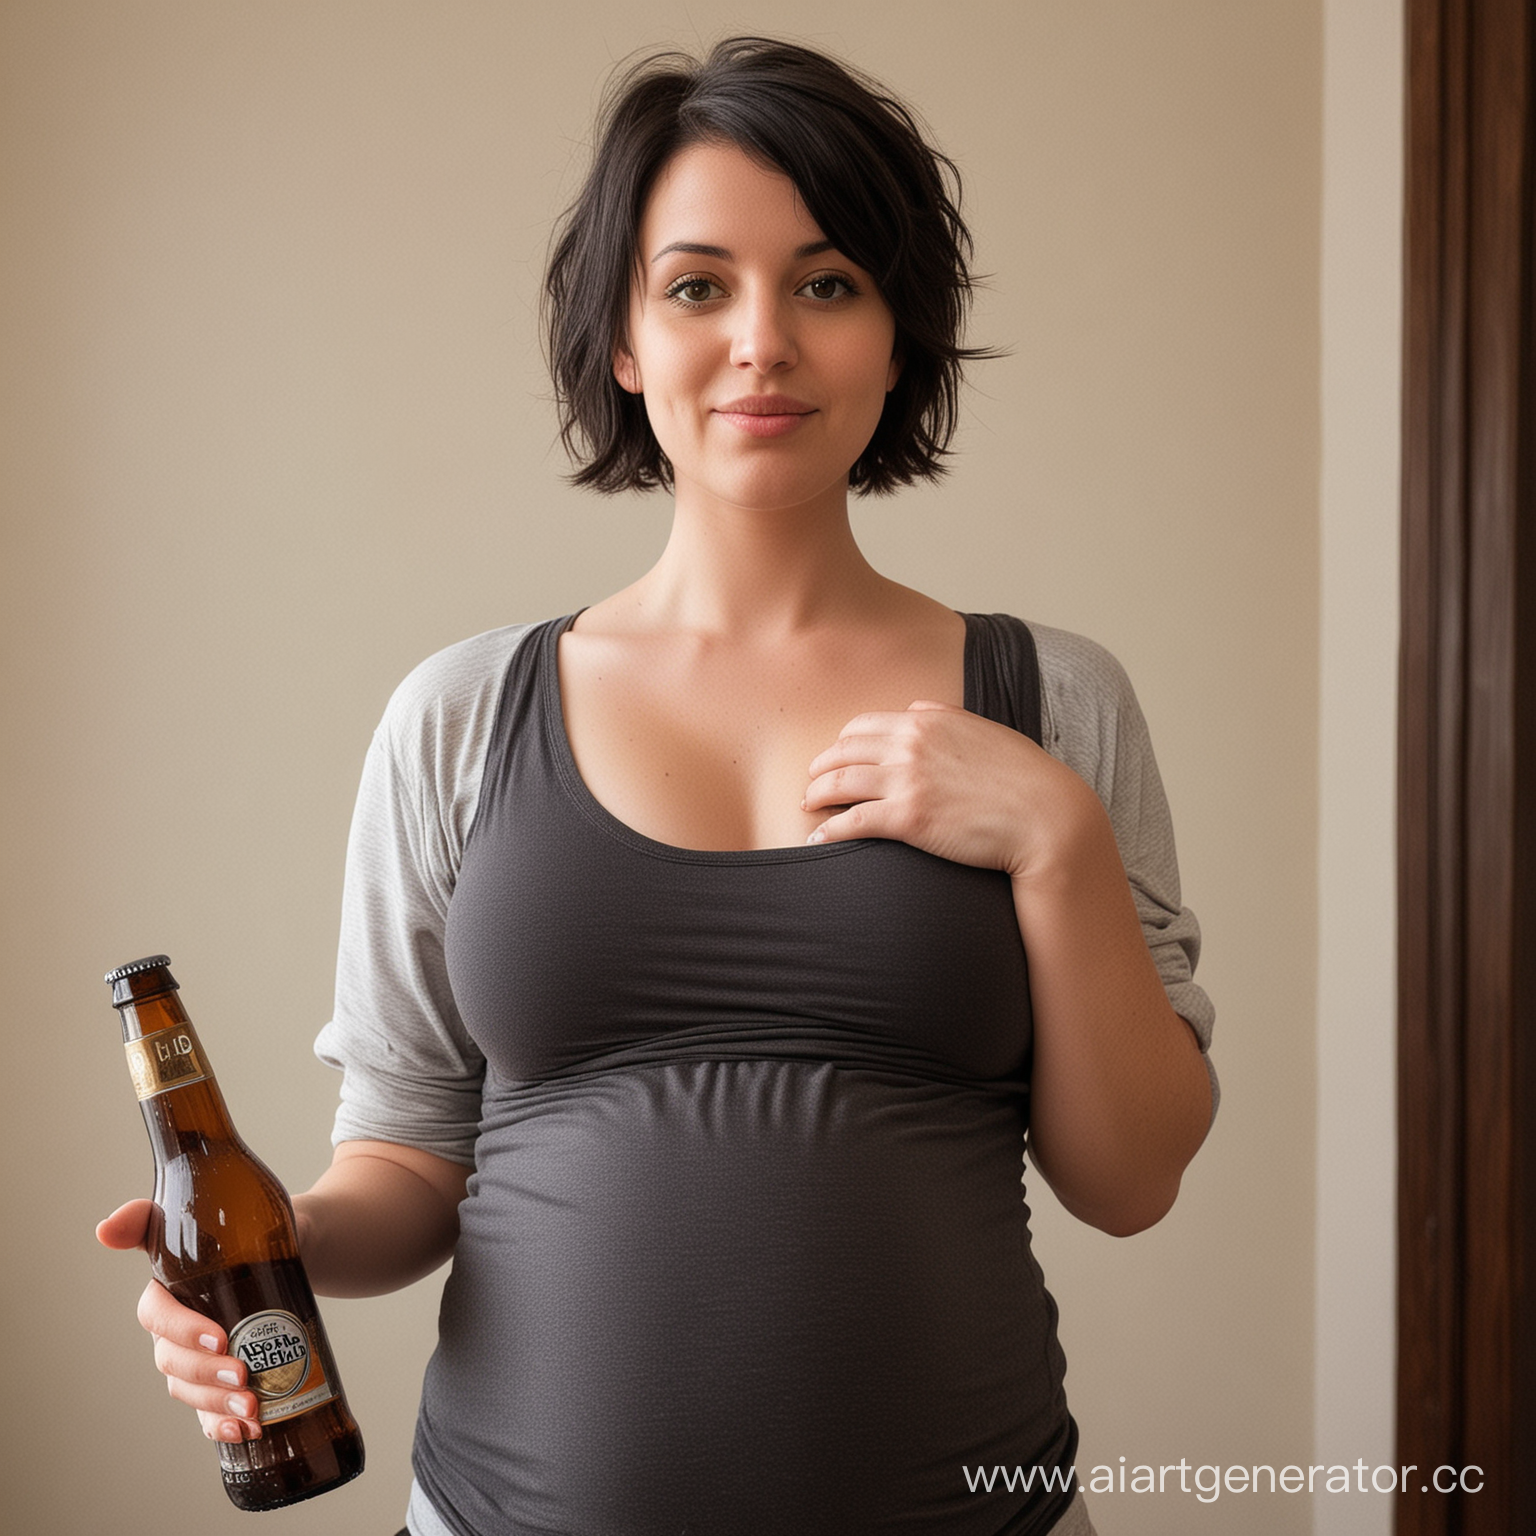 беременная девушка с лишним весом, темные короткие волосы, без макияжа, с маленьким носом и бутылкой пива в руке